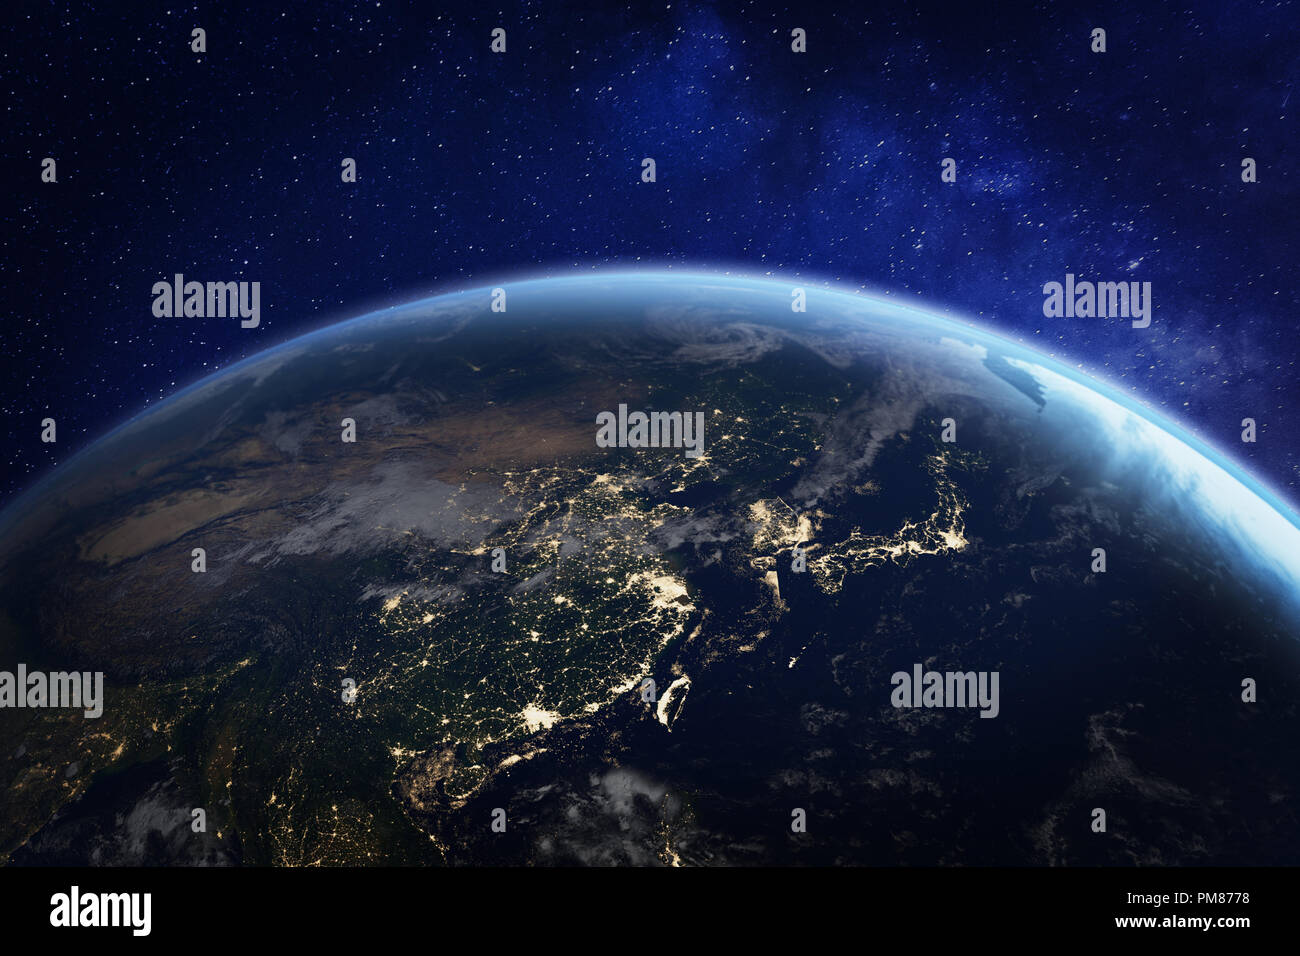 Asie pendant la nuit à partir de l'espace avec les lumières de la ville, montrant l'activité humaine en Chine, Japon, Corée du Sud, Taiwan et d'autres pays, rendu 3D de la planète Terre Banque D'Images